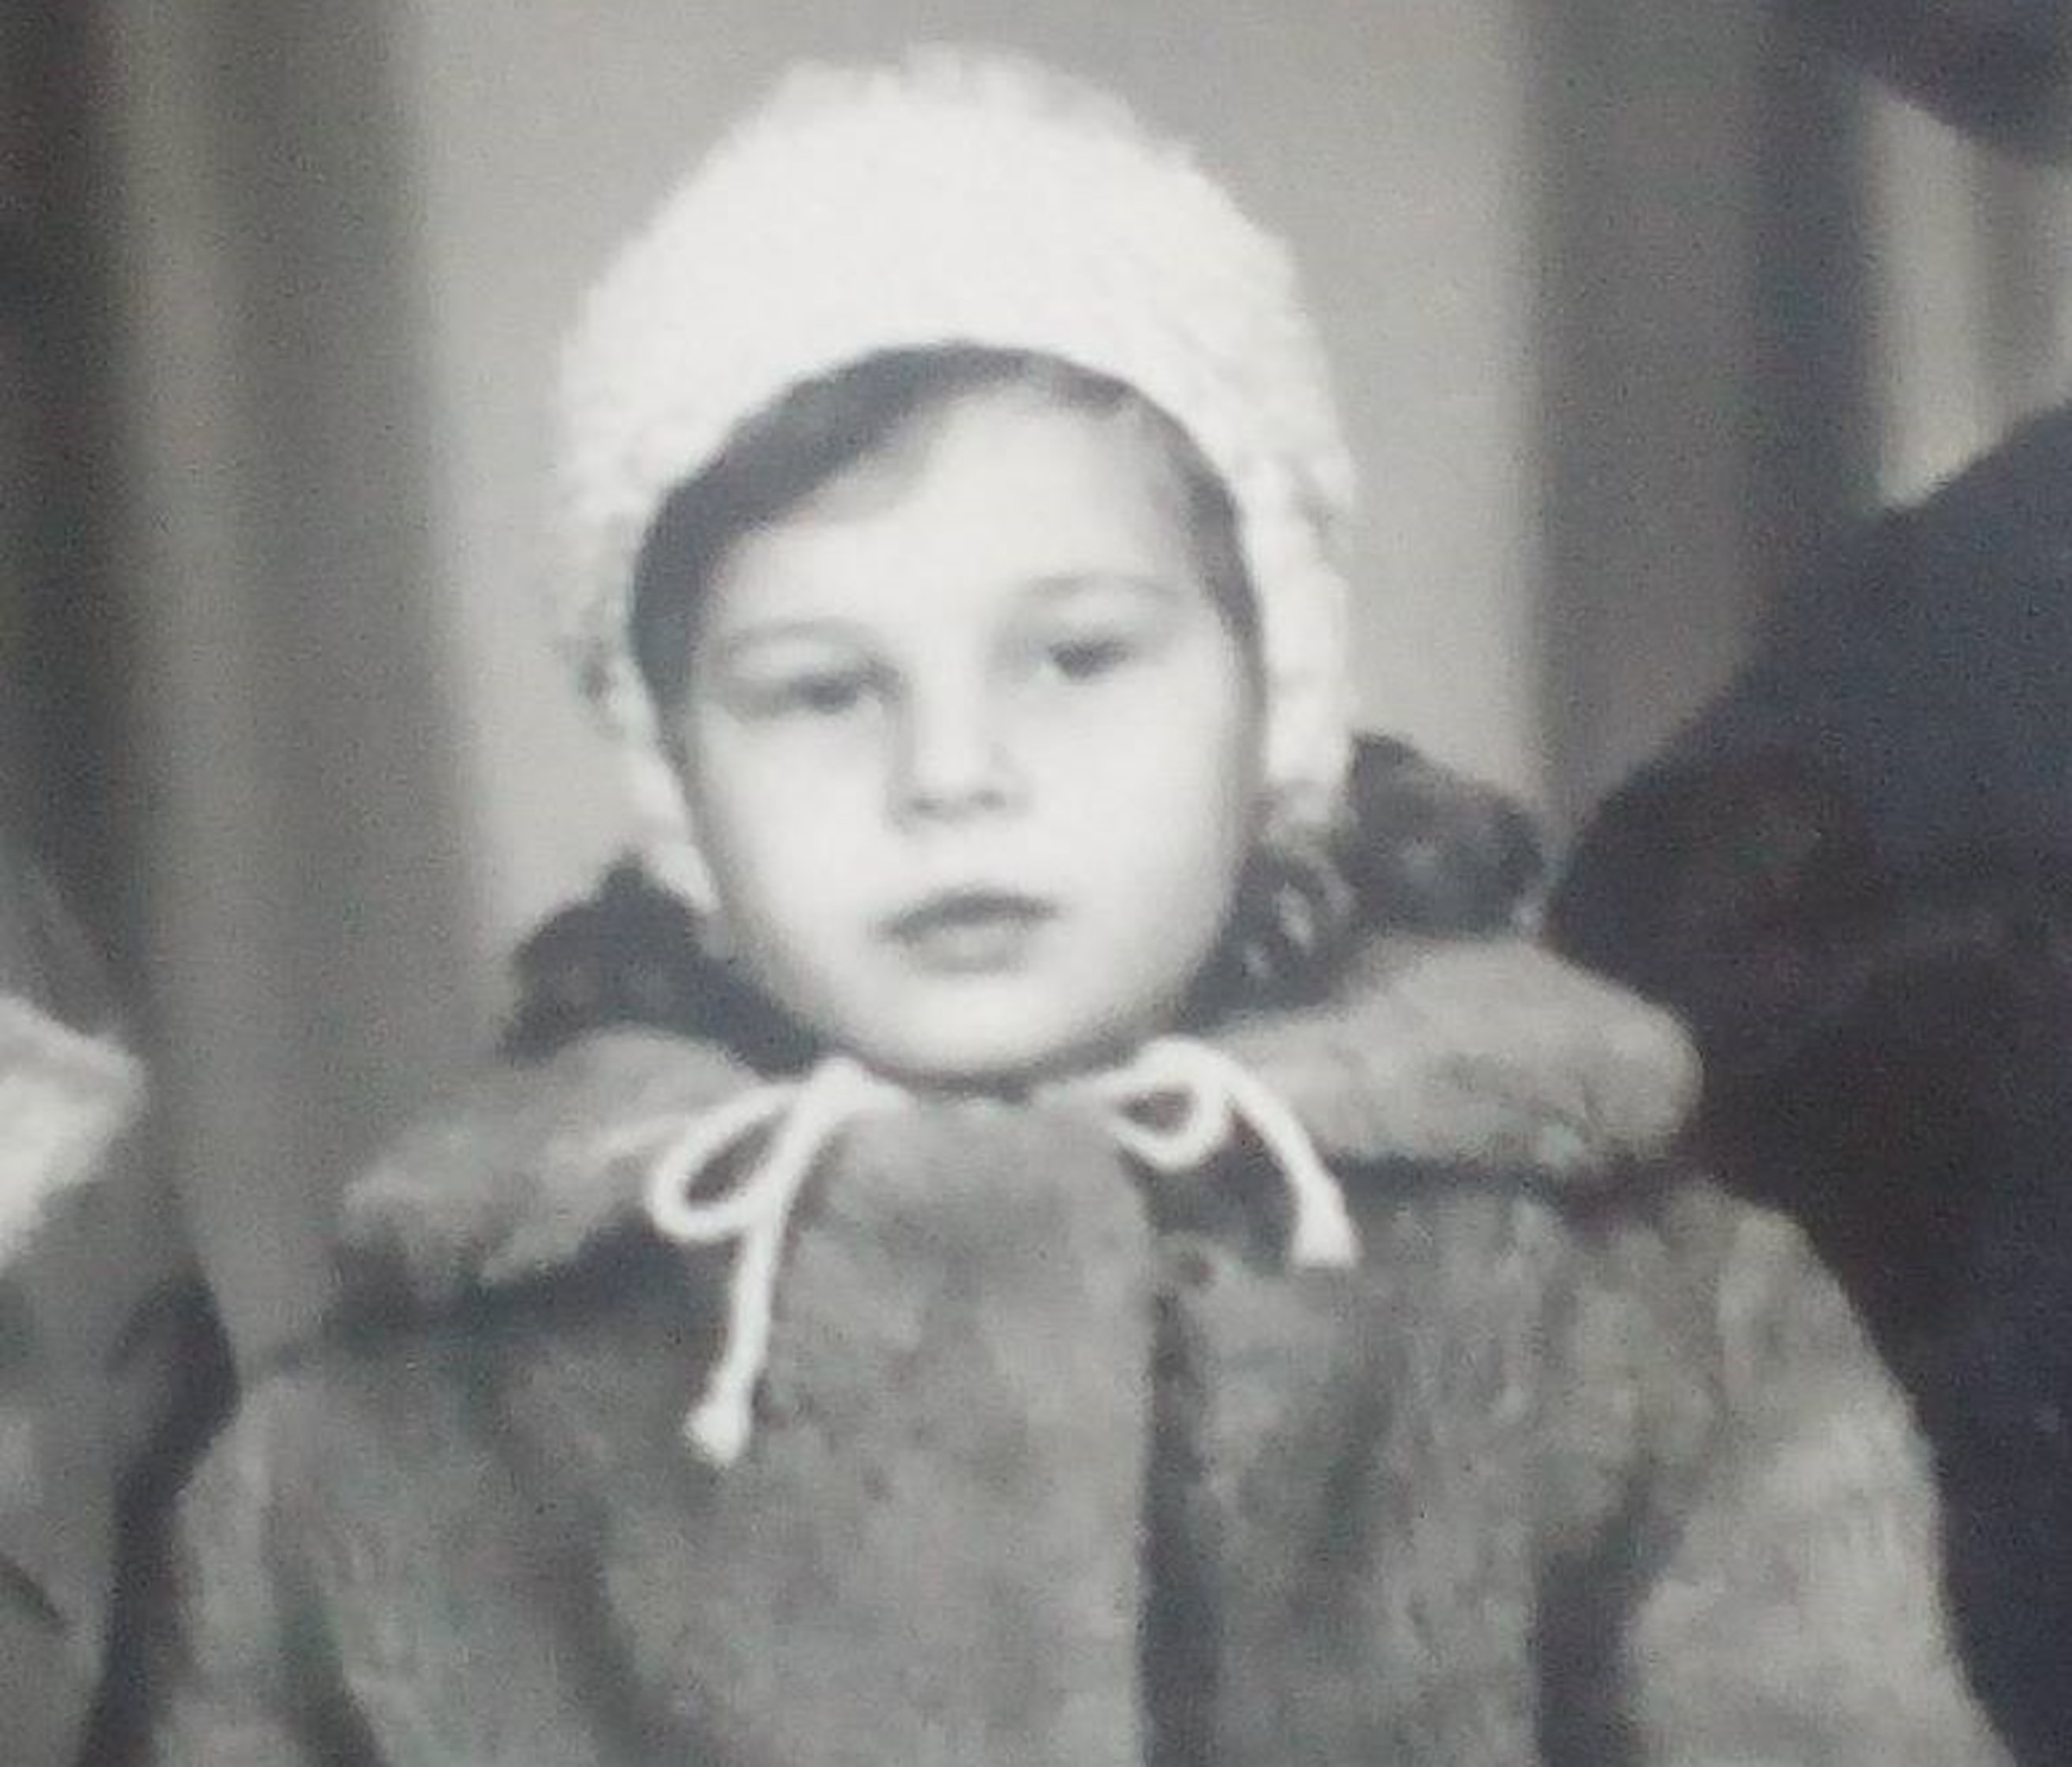 Viktorie Vorobets during childhood